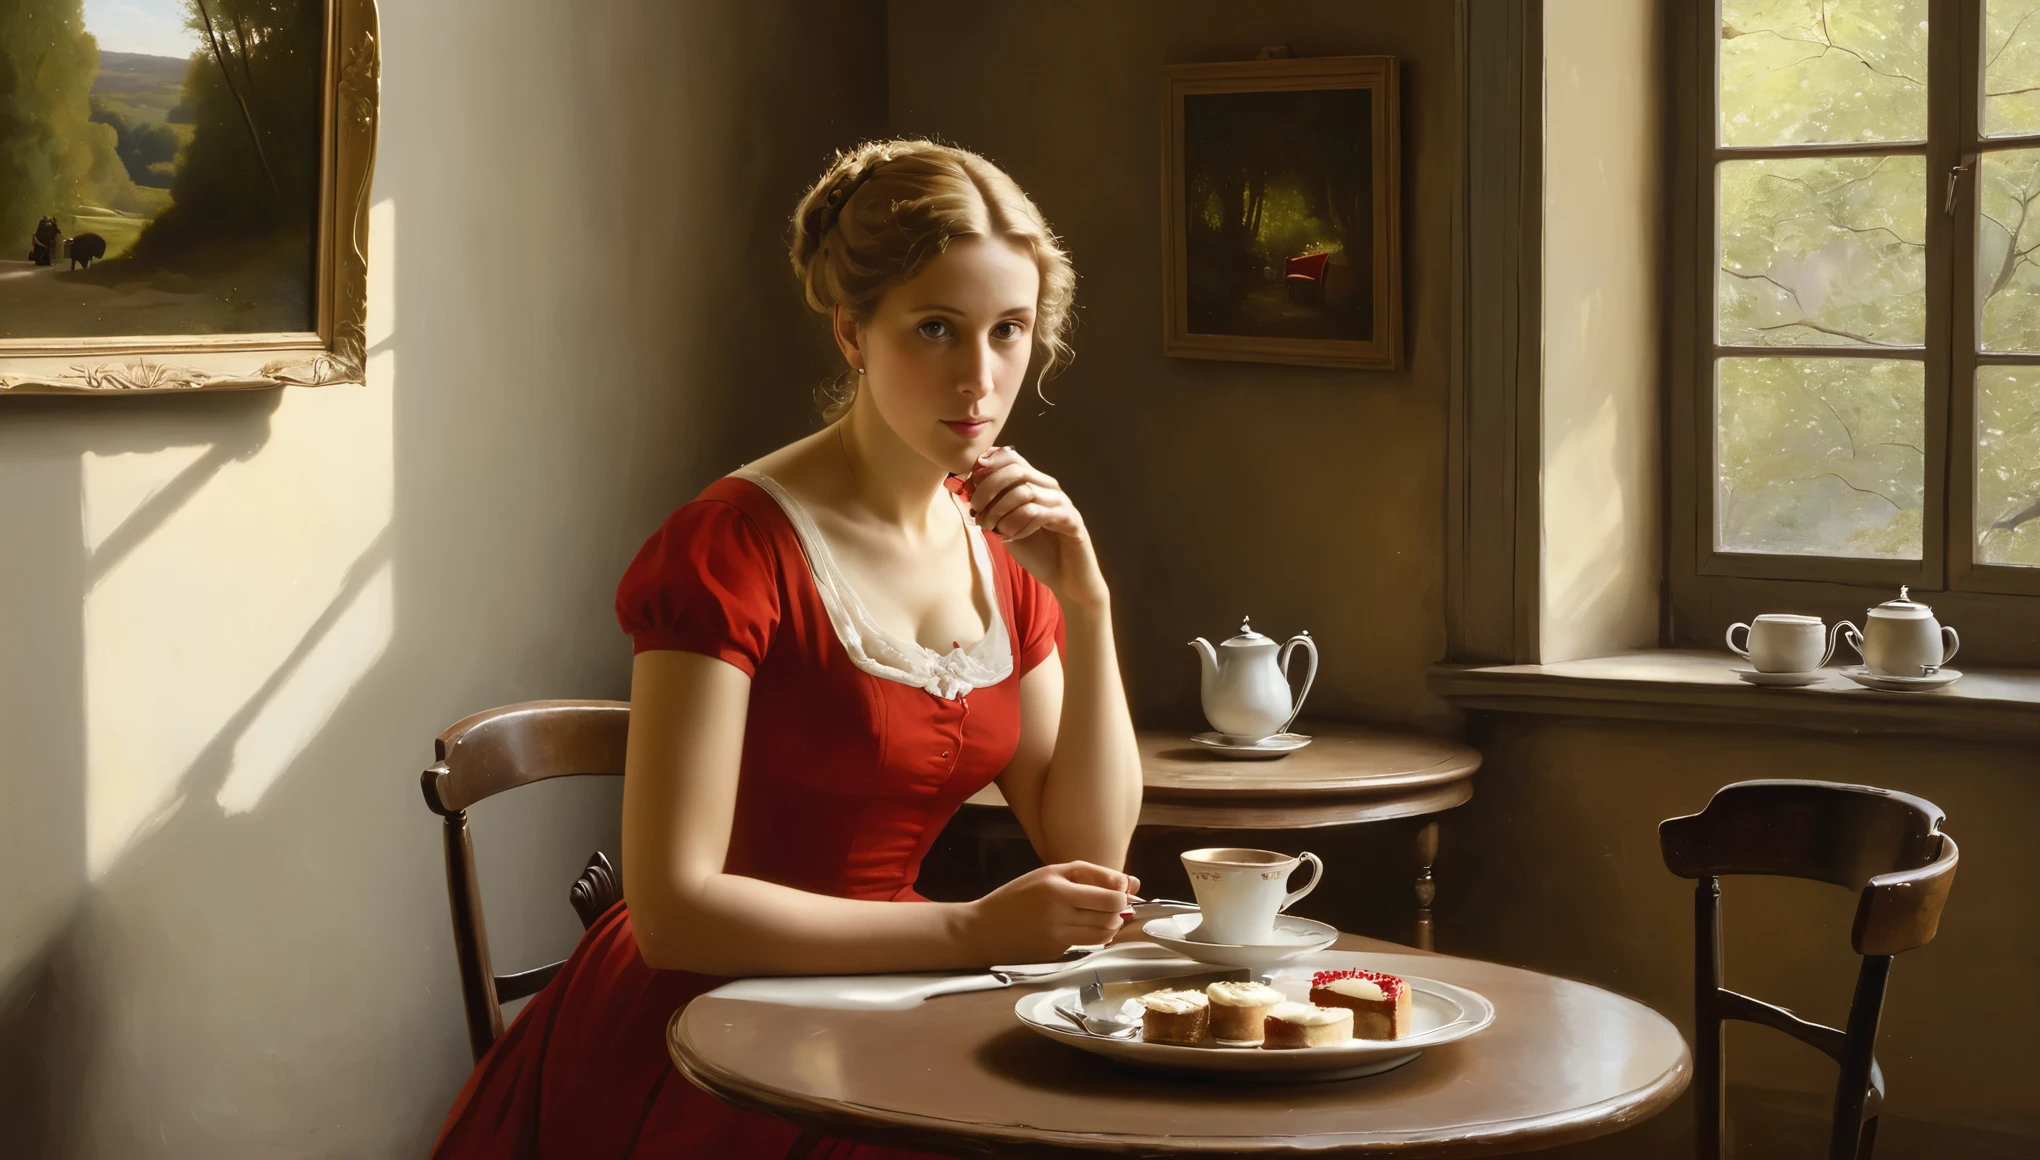 卡米耶·柯罗风格的油画描绘了一位 50 岁的女性在短, 修身红色短裙, 疏, 浅卷发喝着热茶. 在桌子上, 有一盘沙拉和一小块红色芝士蛋糕. 她正在考虑和丈夫离婚. 在背景中, 布宜诺斯艾利斯一家舒适的小咖啡馆的墙壁上装饰着艺术家卡米耶·柯罗的画作, 晨曦透过窗户照进来.